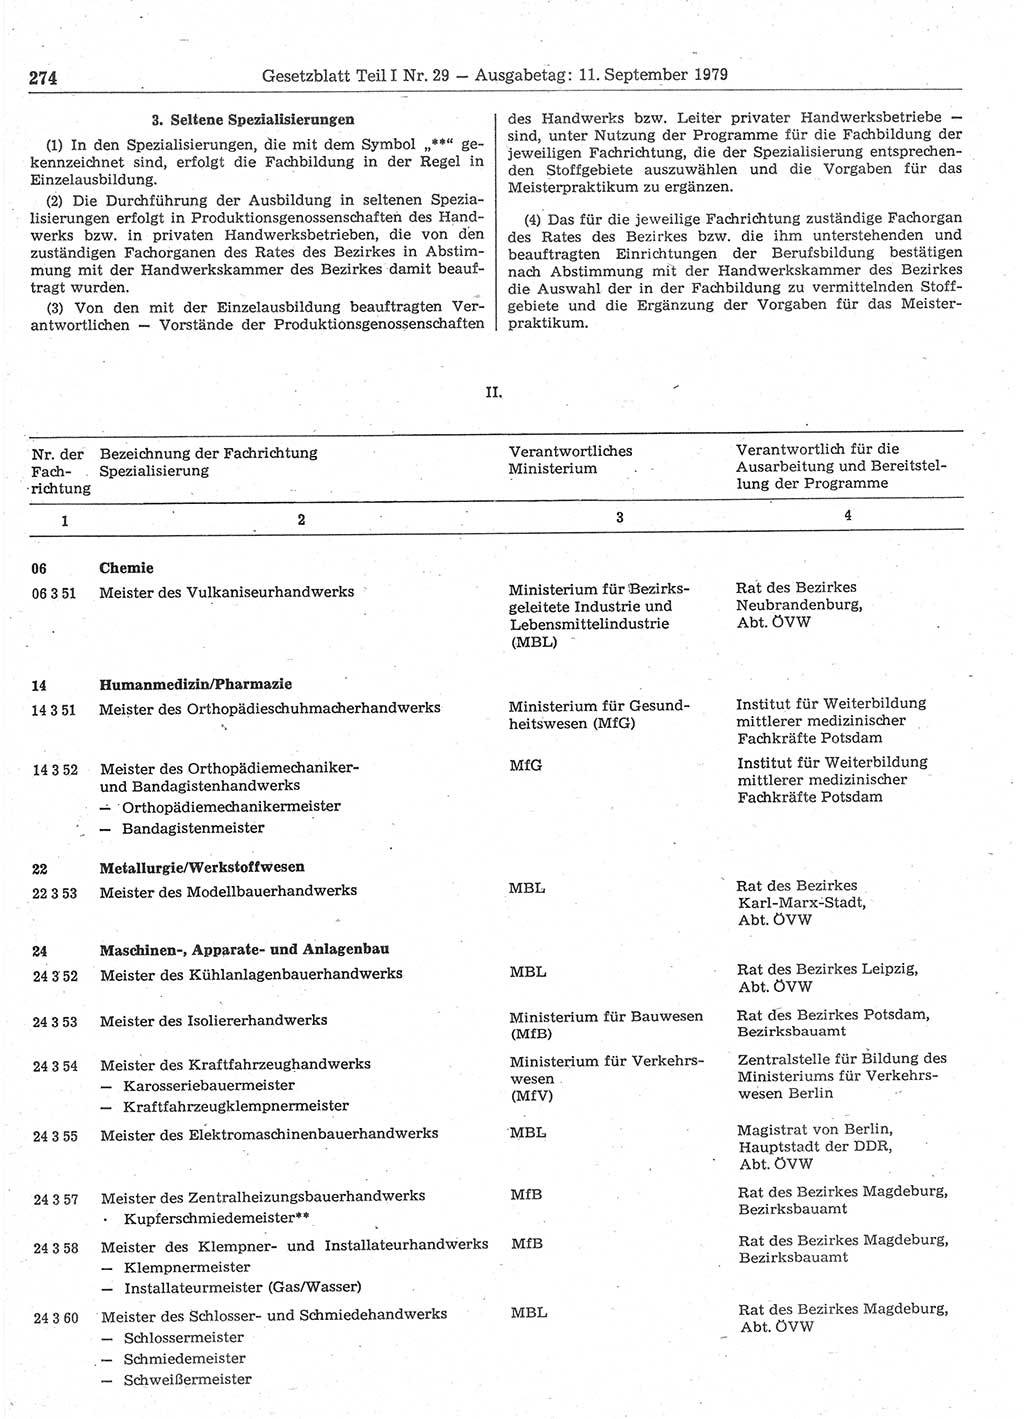 Gesetzblatt (GBl.) der Deutschen Demokratischen Republik (DDR) Teil Ⅰ 1979, Seite 274 (GBl. DDR Ⅰ 1979, S. 274)